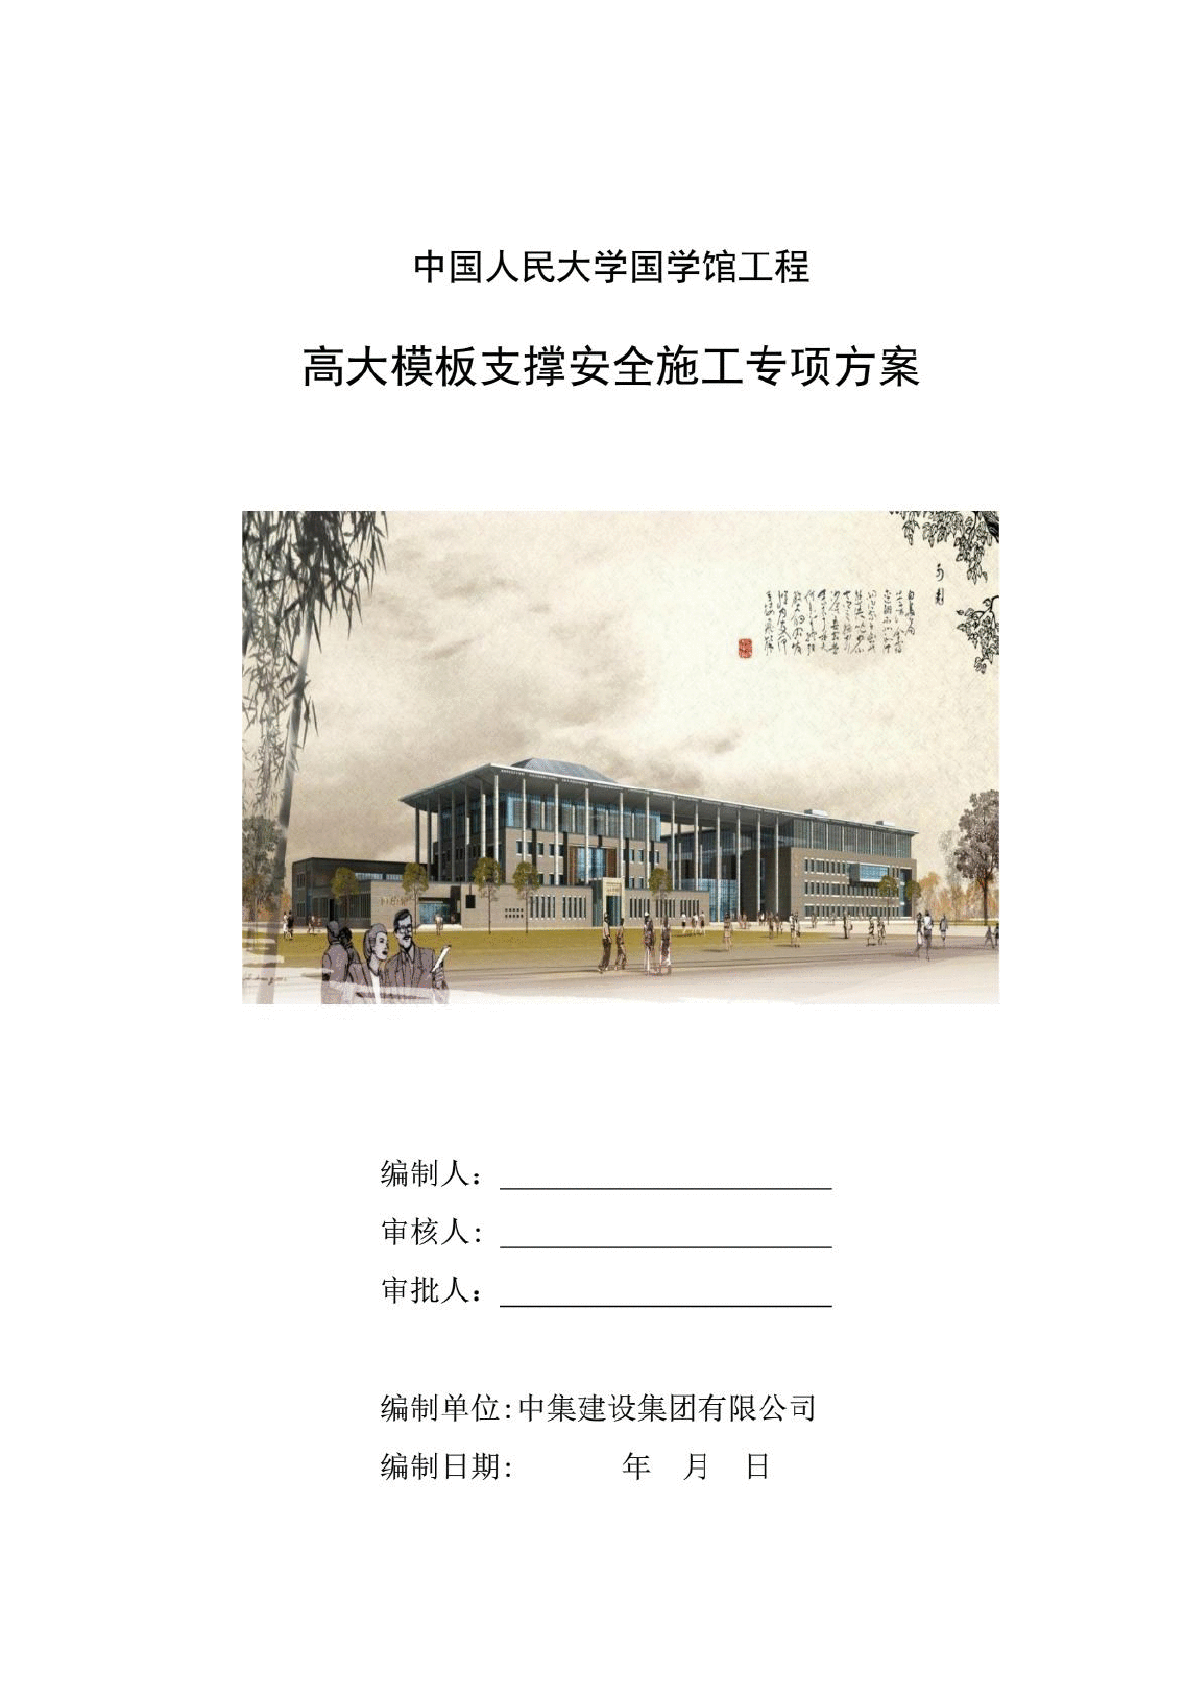 中国人民大学国学馆工程高大模板支撑安全施工专项方案